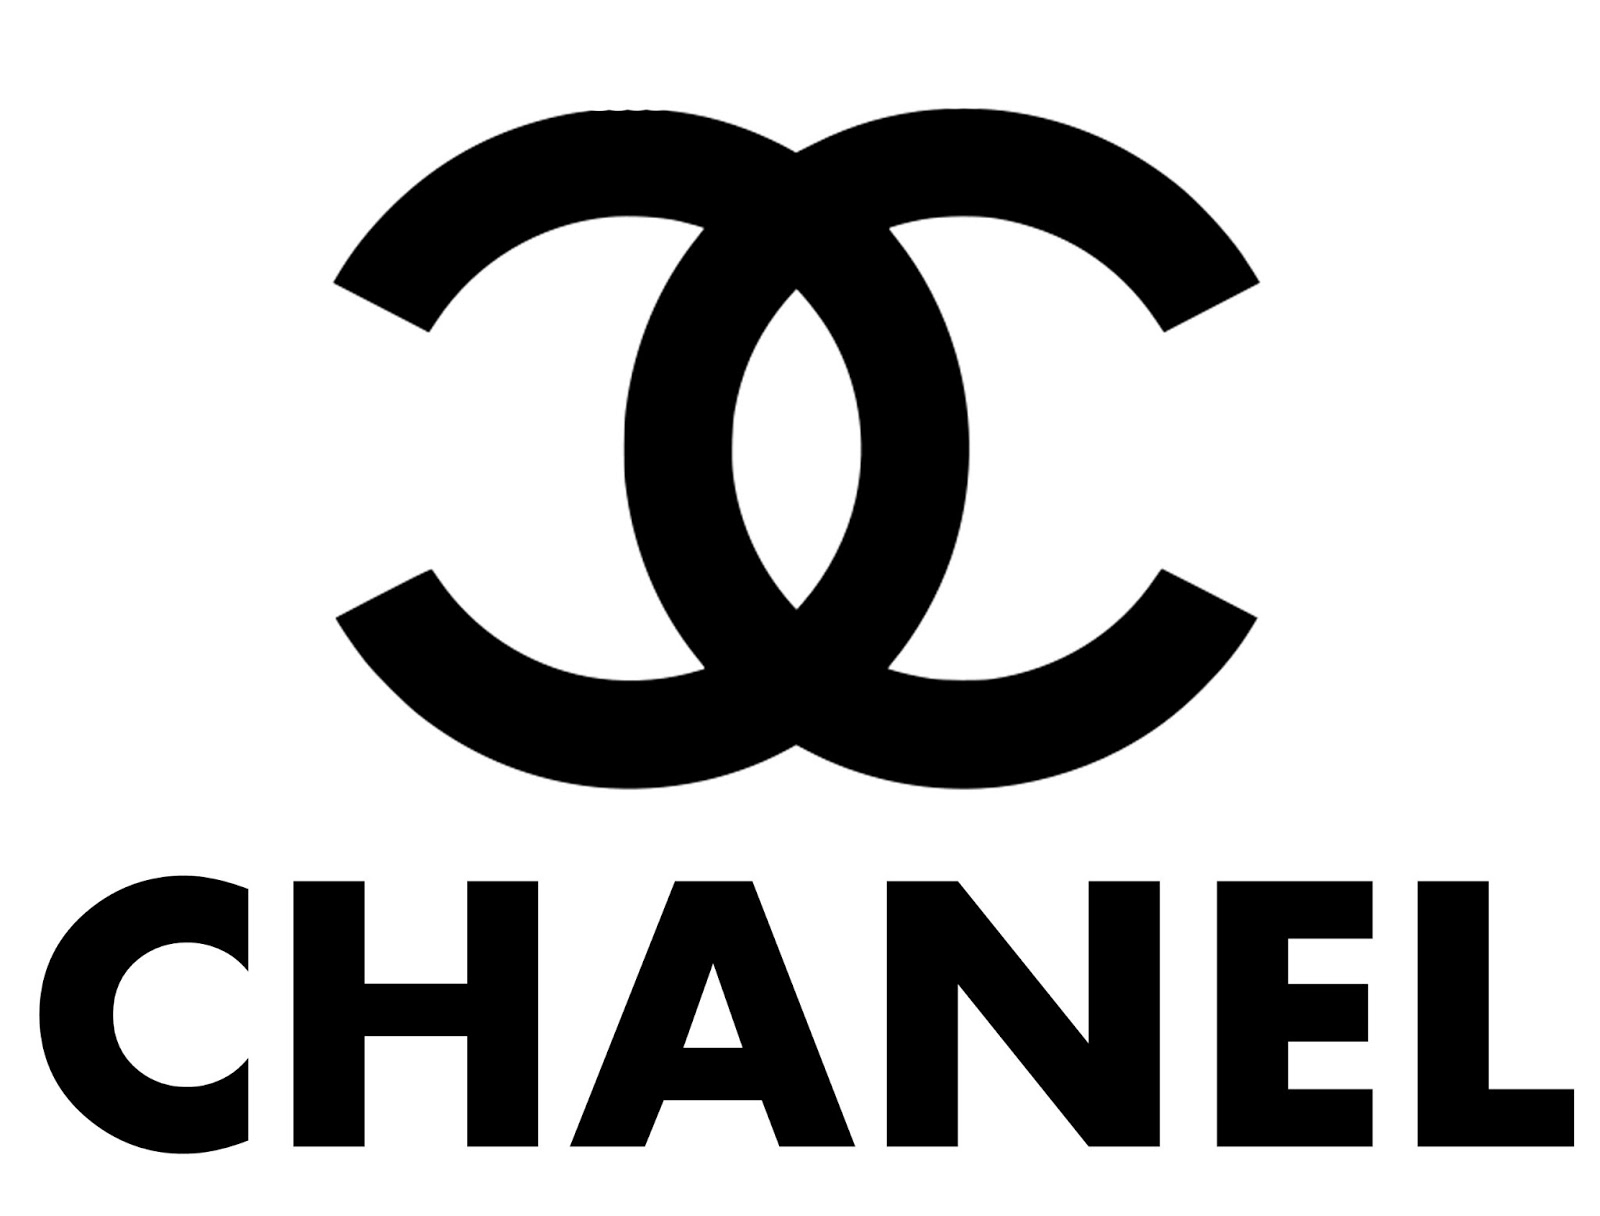 Chanel Printable Images - Printable World Holiday